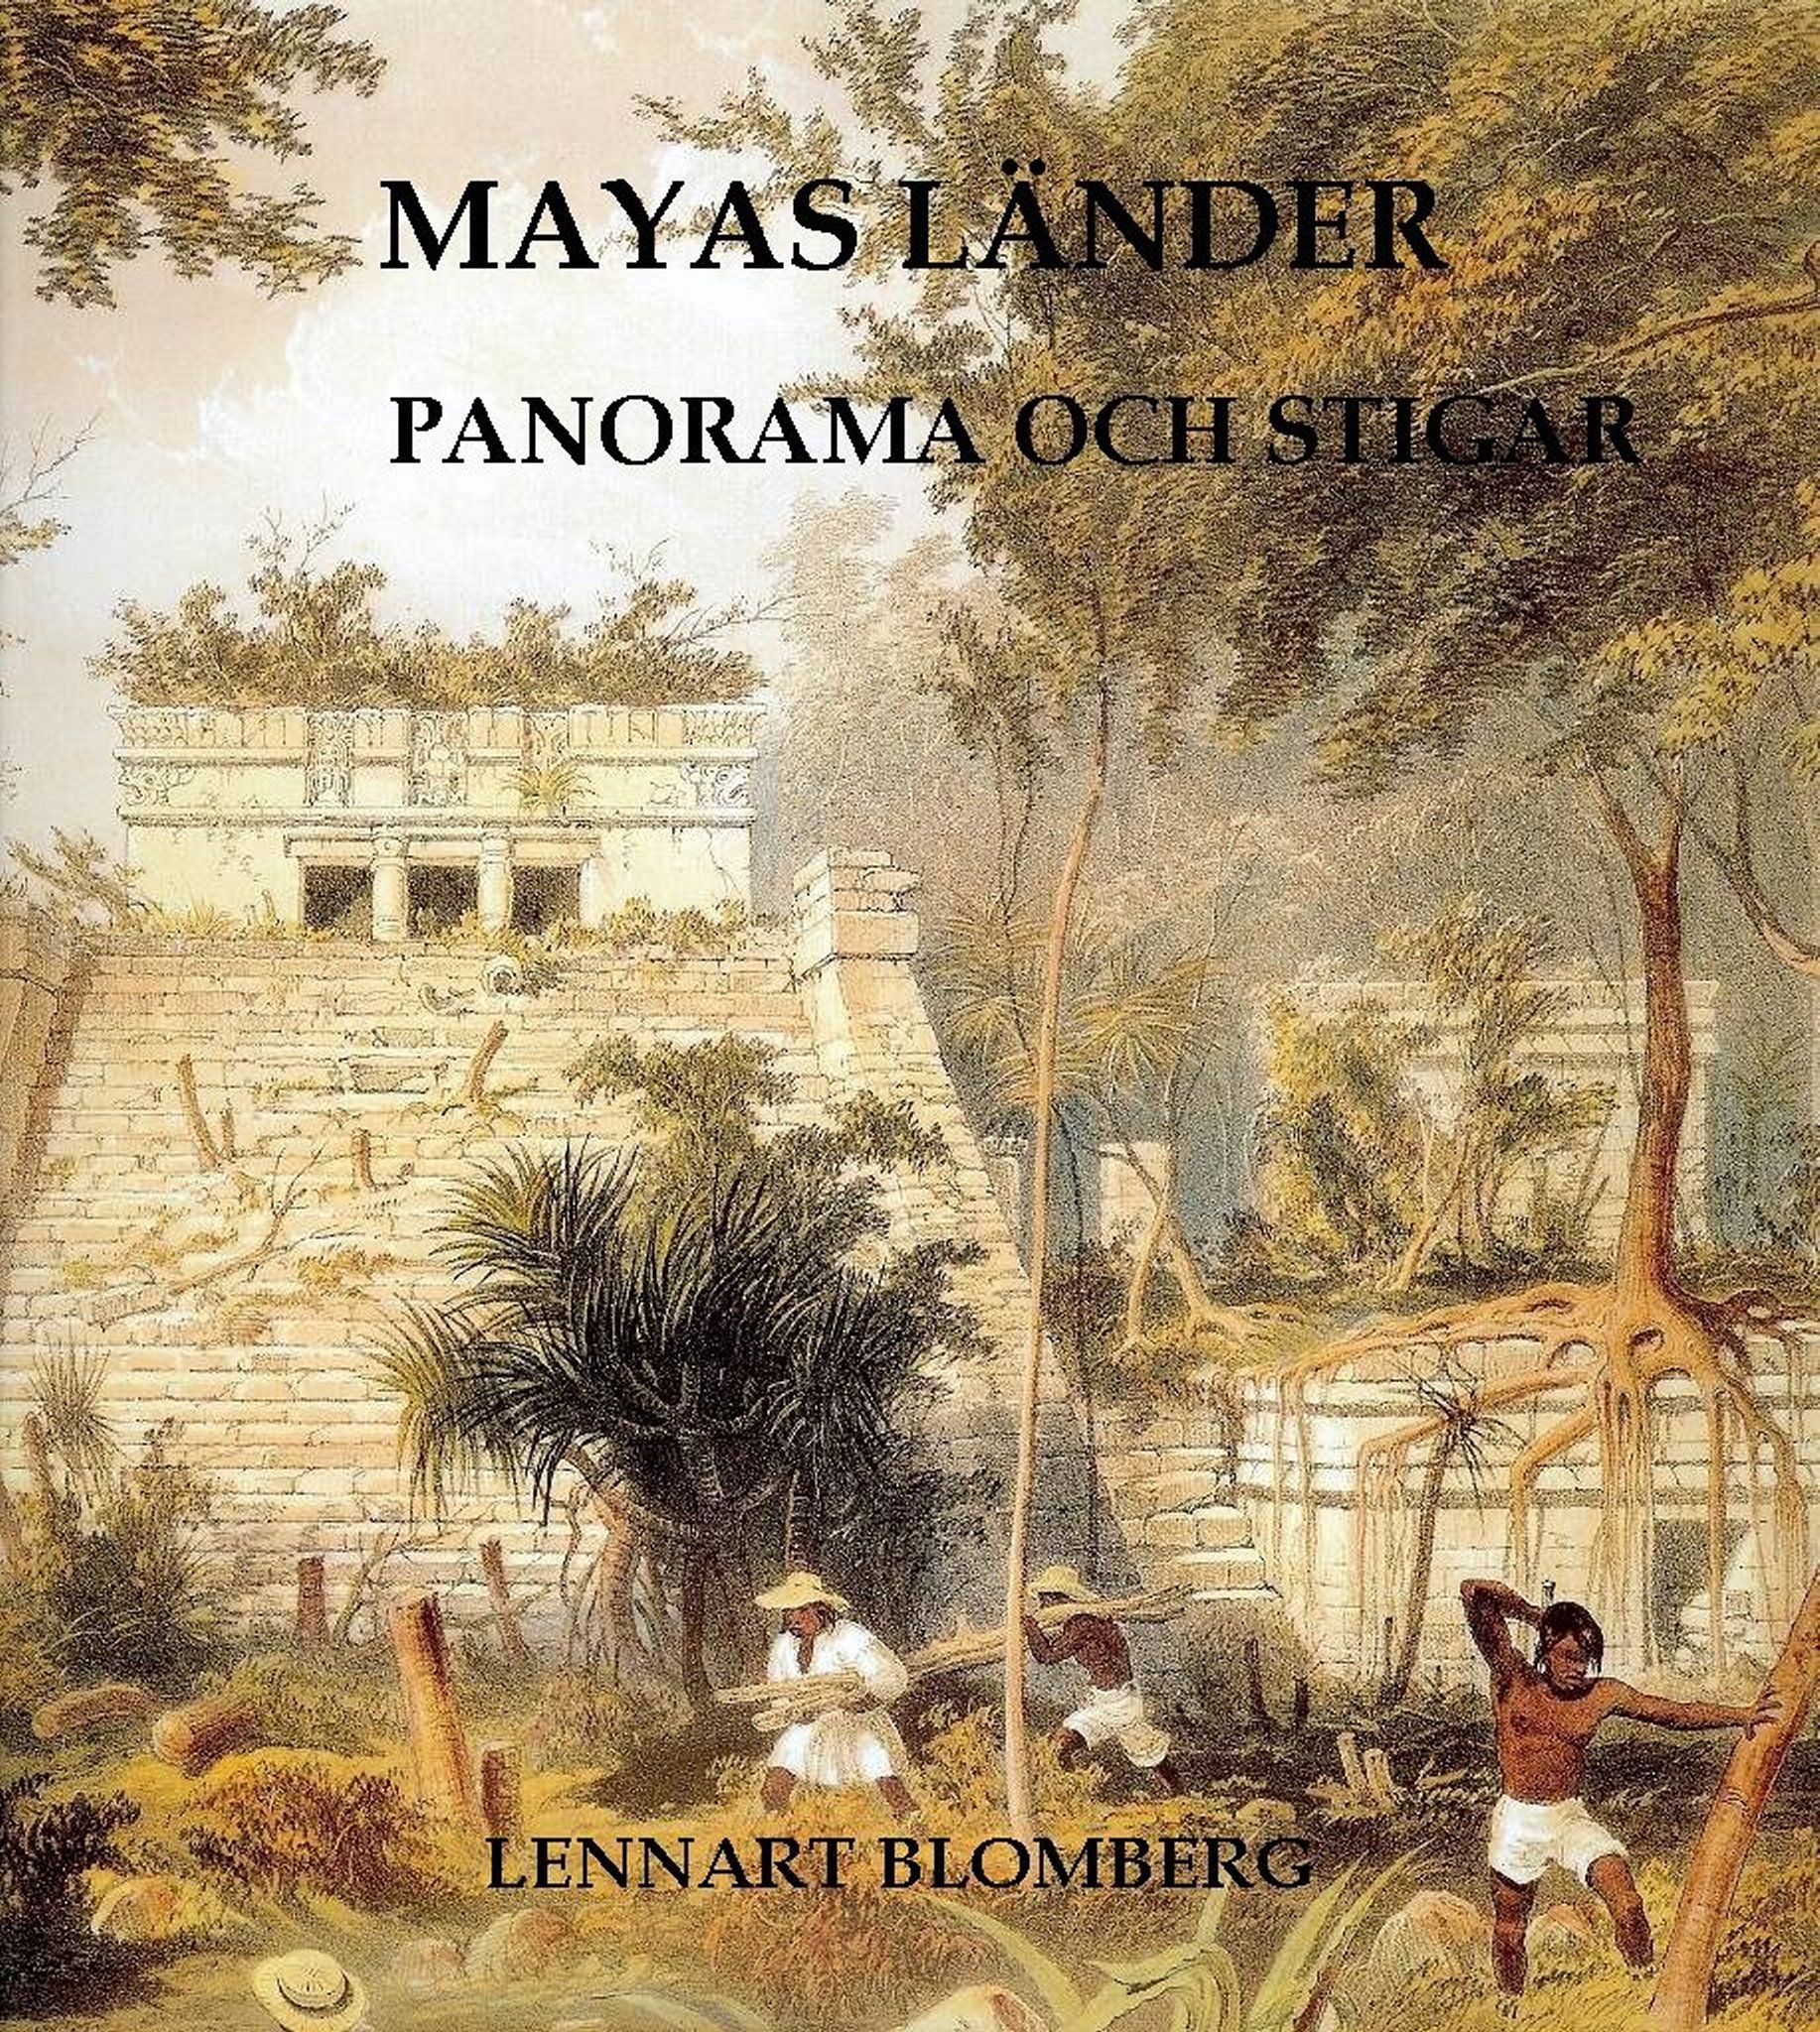 Mayas länder. Panorama och stigar, eBook by Lennart Blomberg